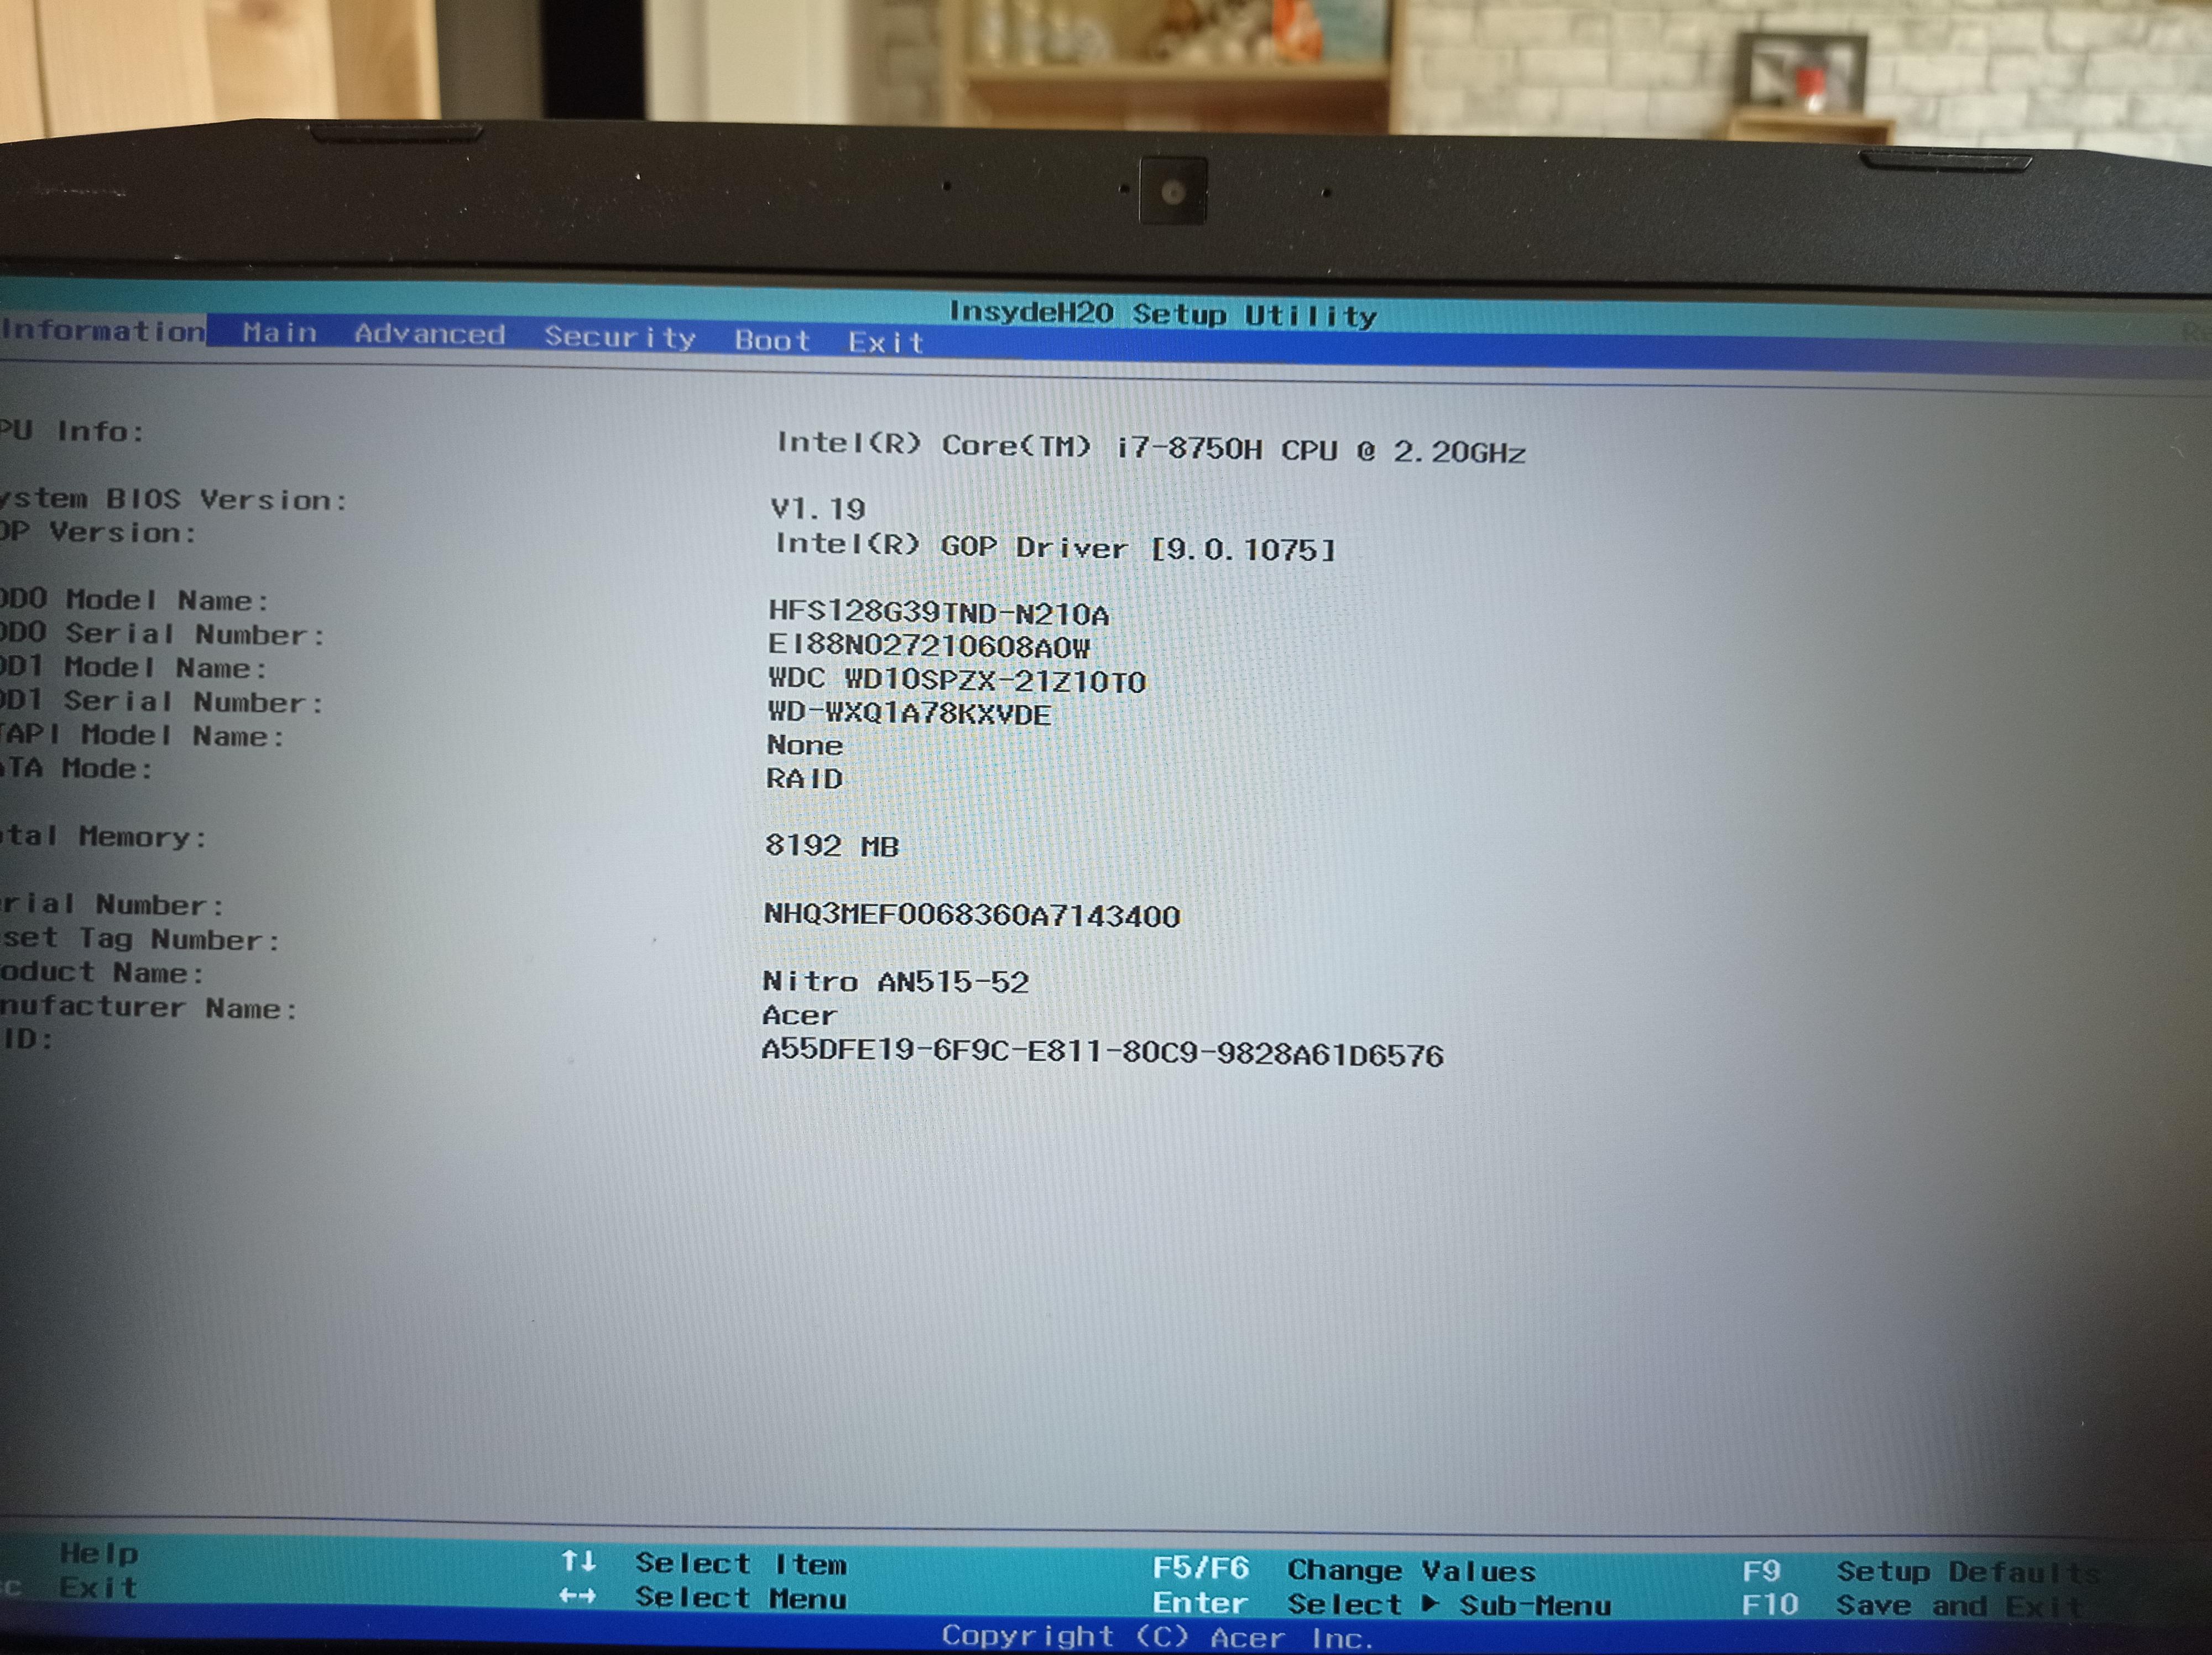 Erreur SrtTrail.txt lors de la réparation automatique de Windows 10 – Le  Crabe Info